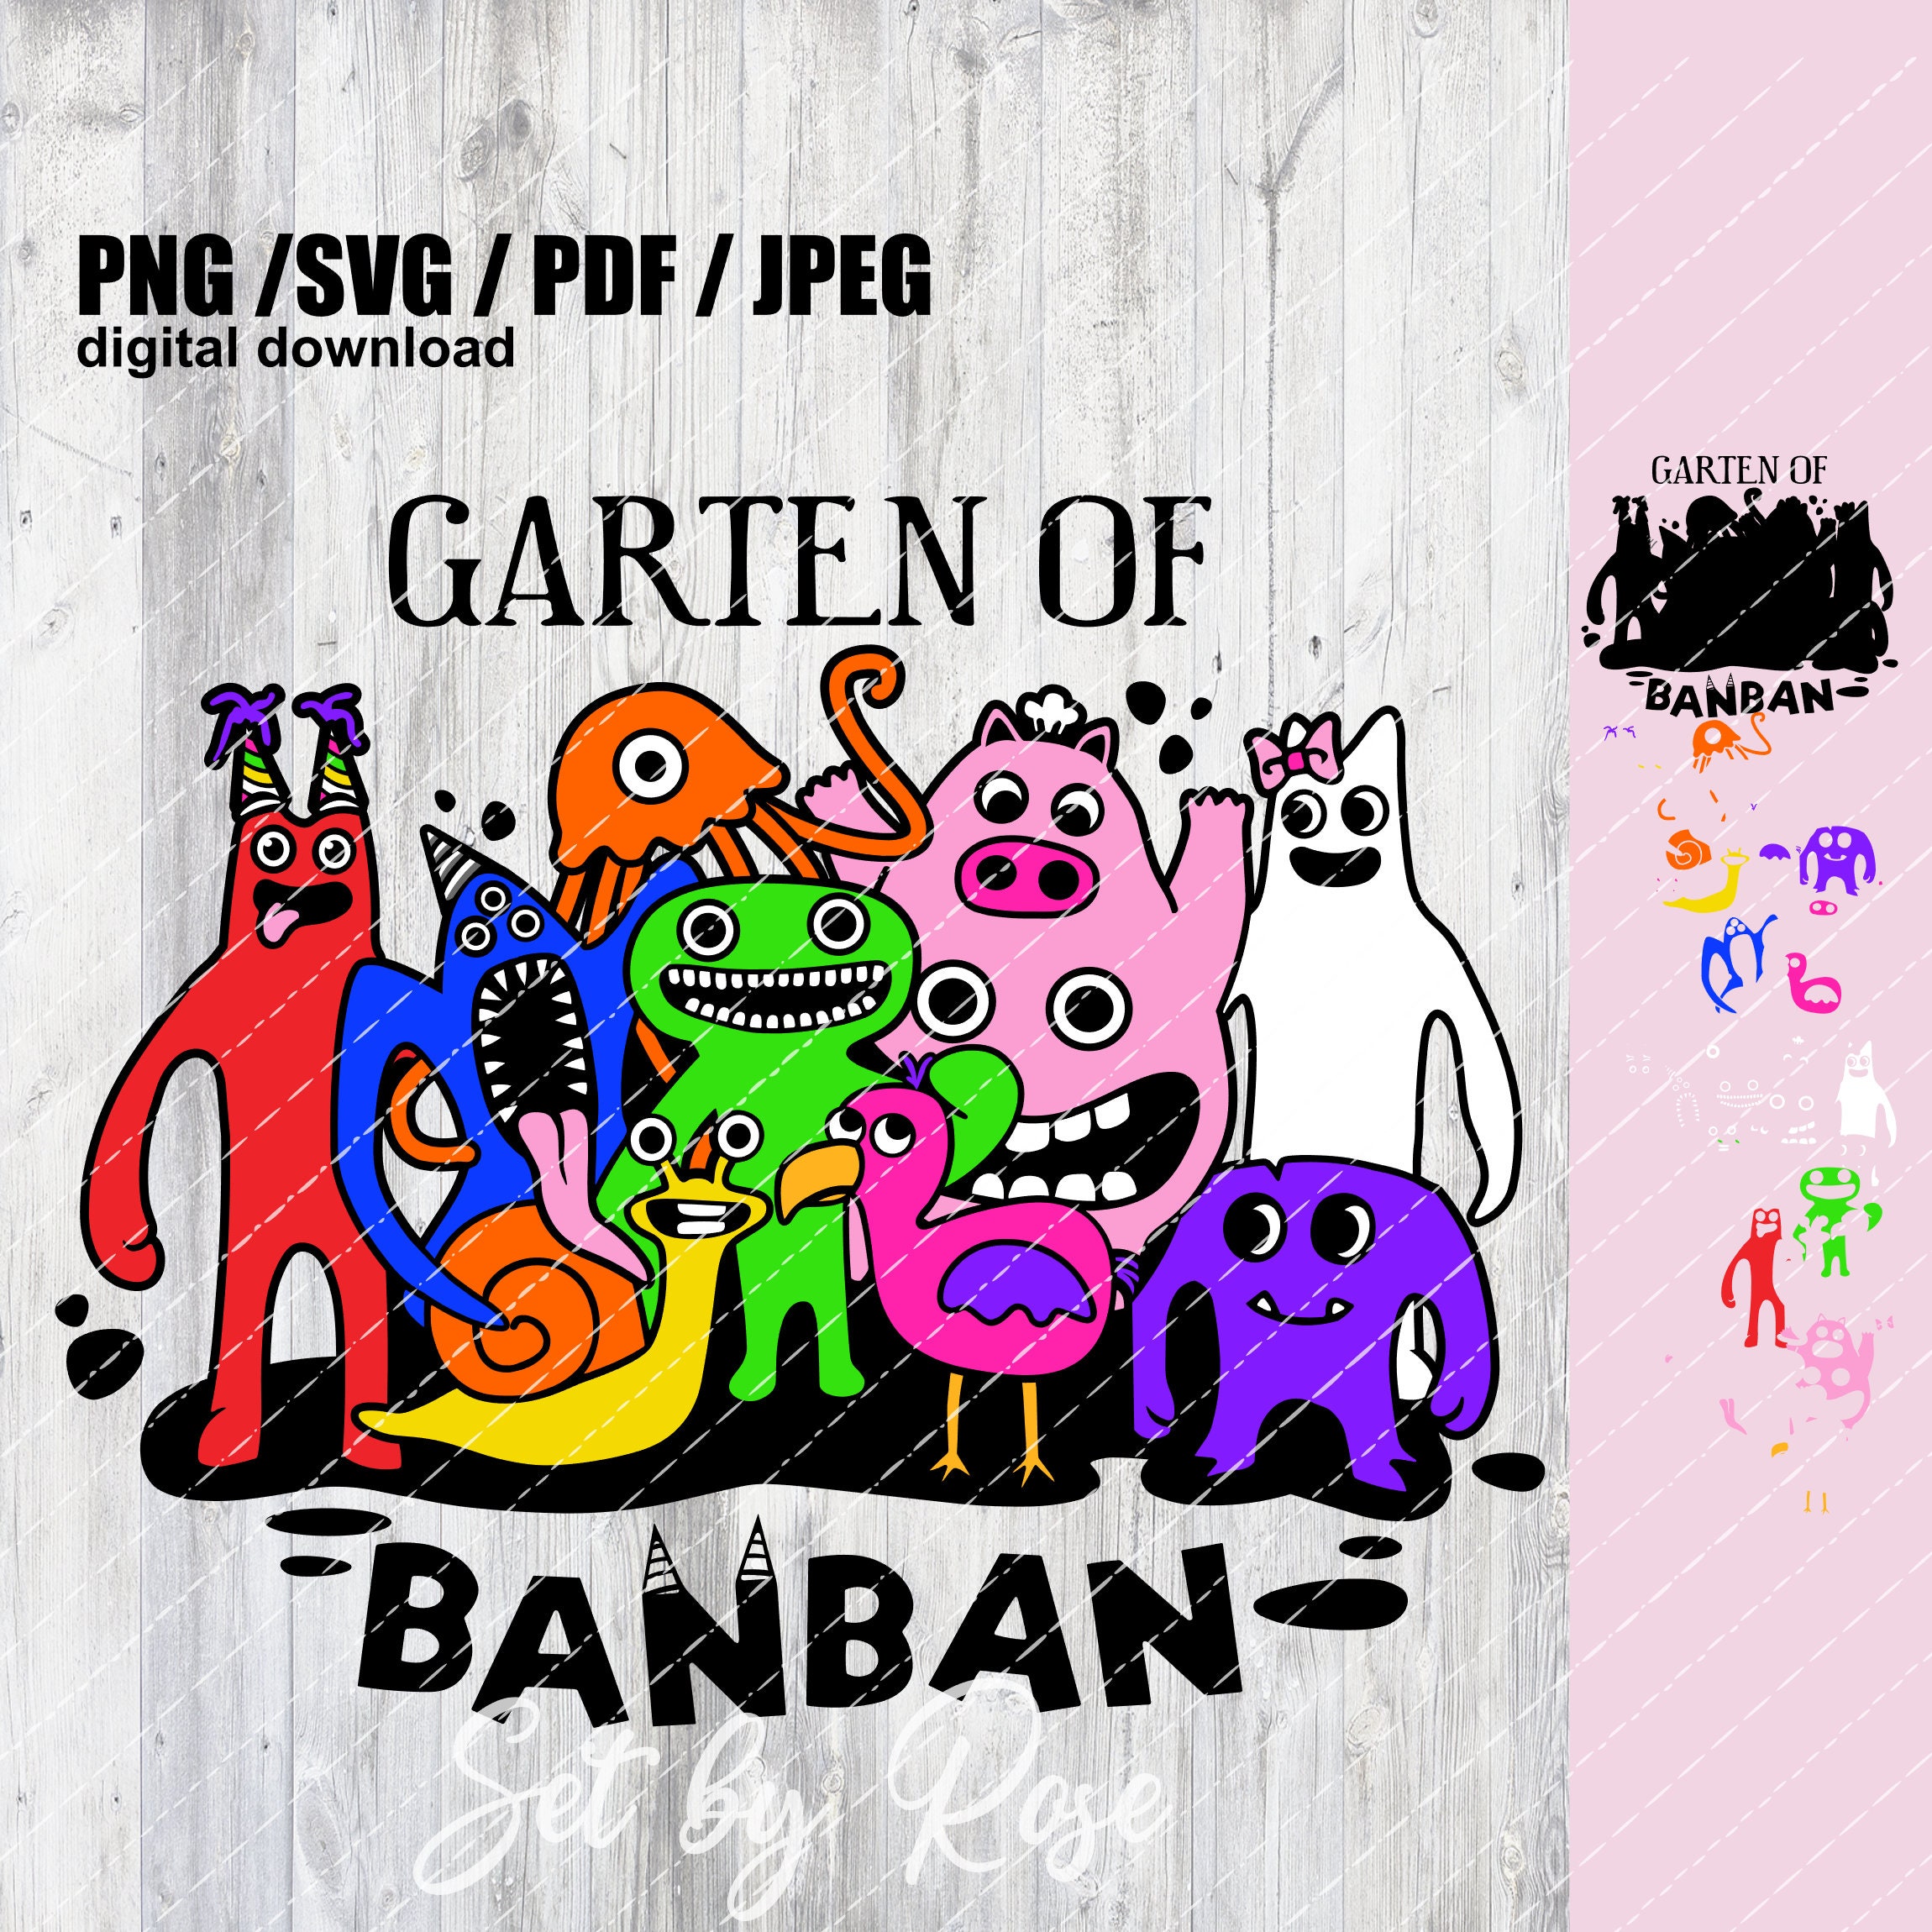 Kit so um bolinho garden of banban